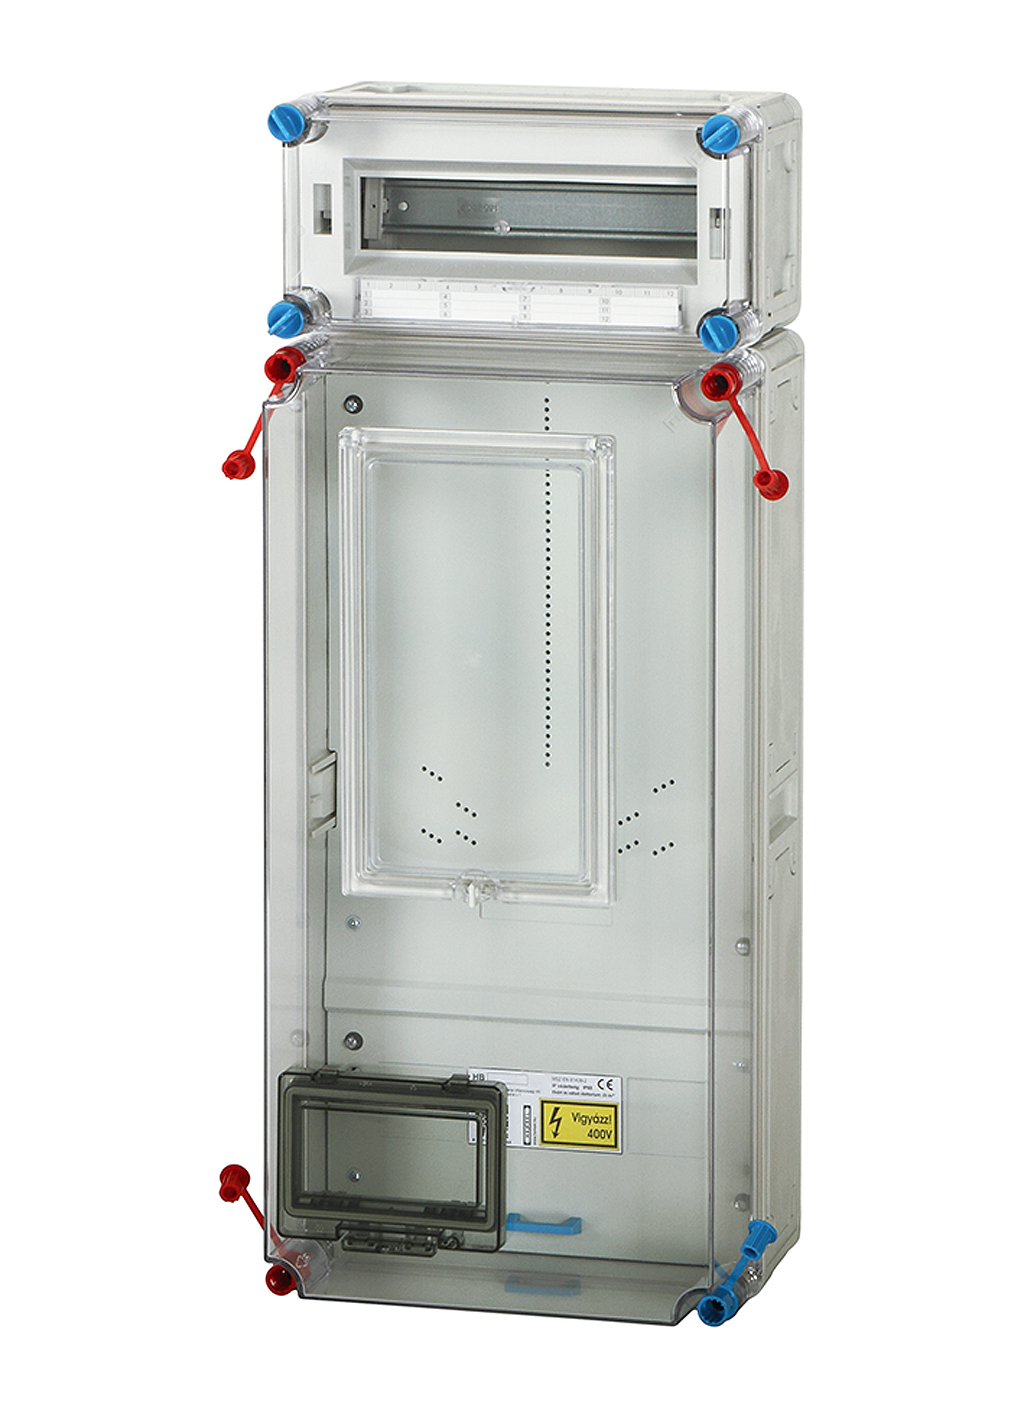 Hensel HB3012-U fogyasztásmérő szekrény, 1 vagy 3 fázisú mérő számára, szabadvezetékes, 12 modulos kiselosztó, 63A mindennapszaki